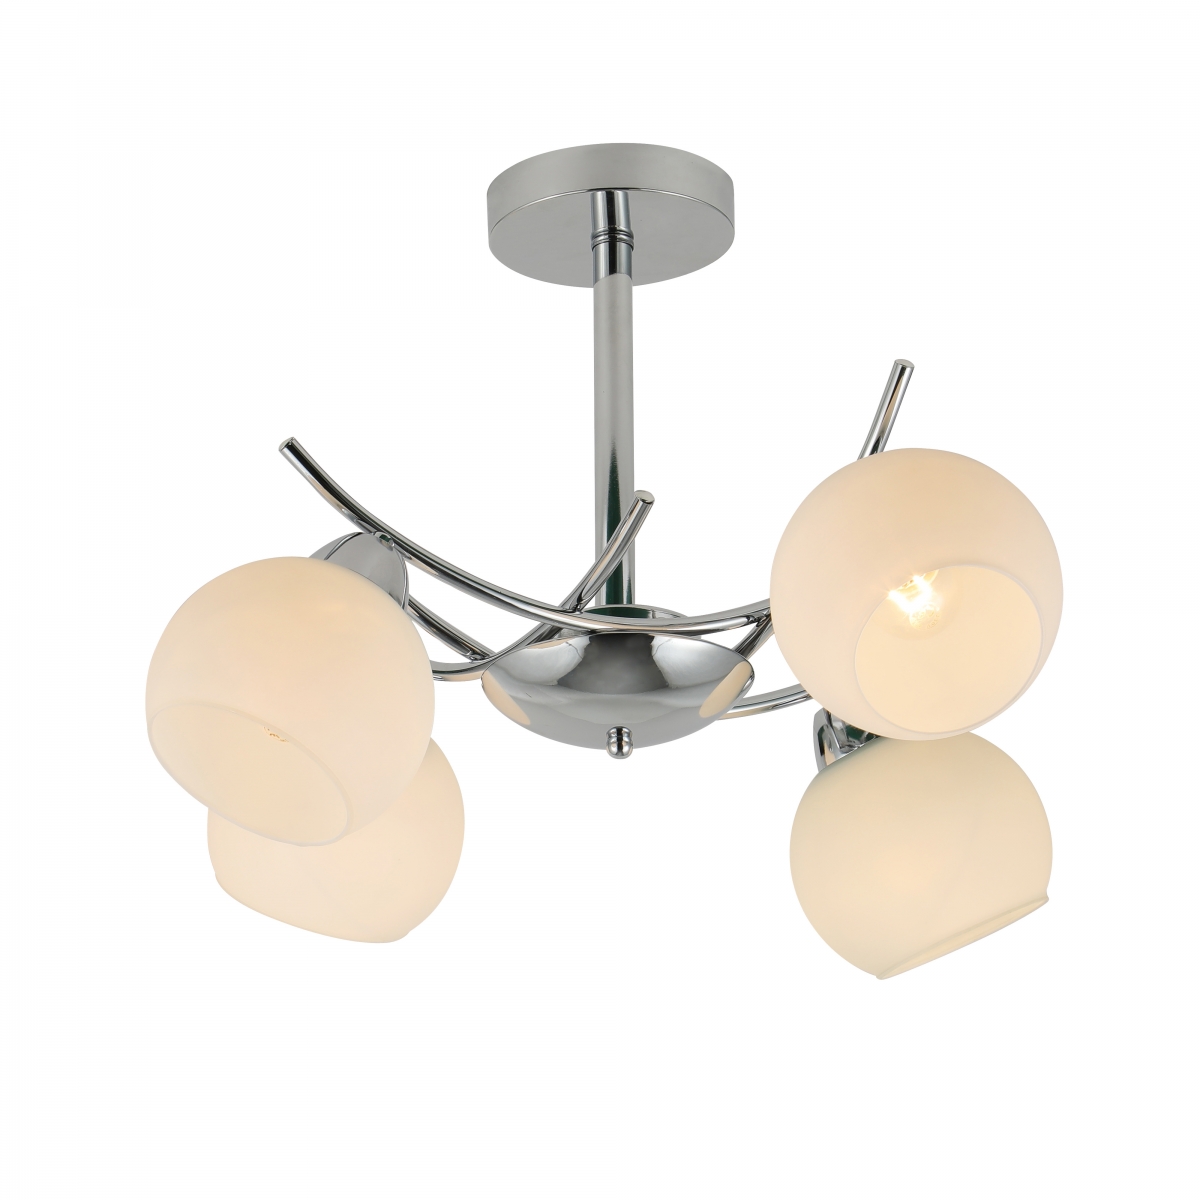 Lampa sufitowa Argos, minimalistyczny design, chrom, 4 źródła światła